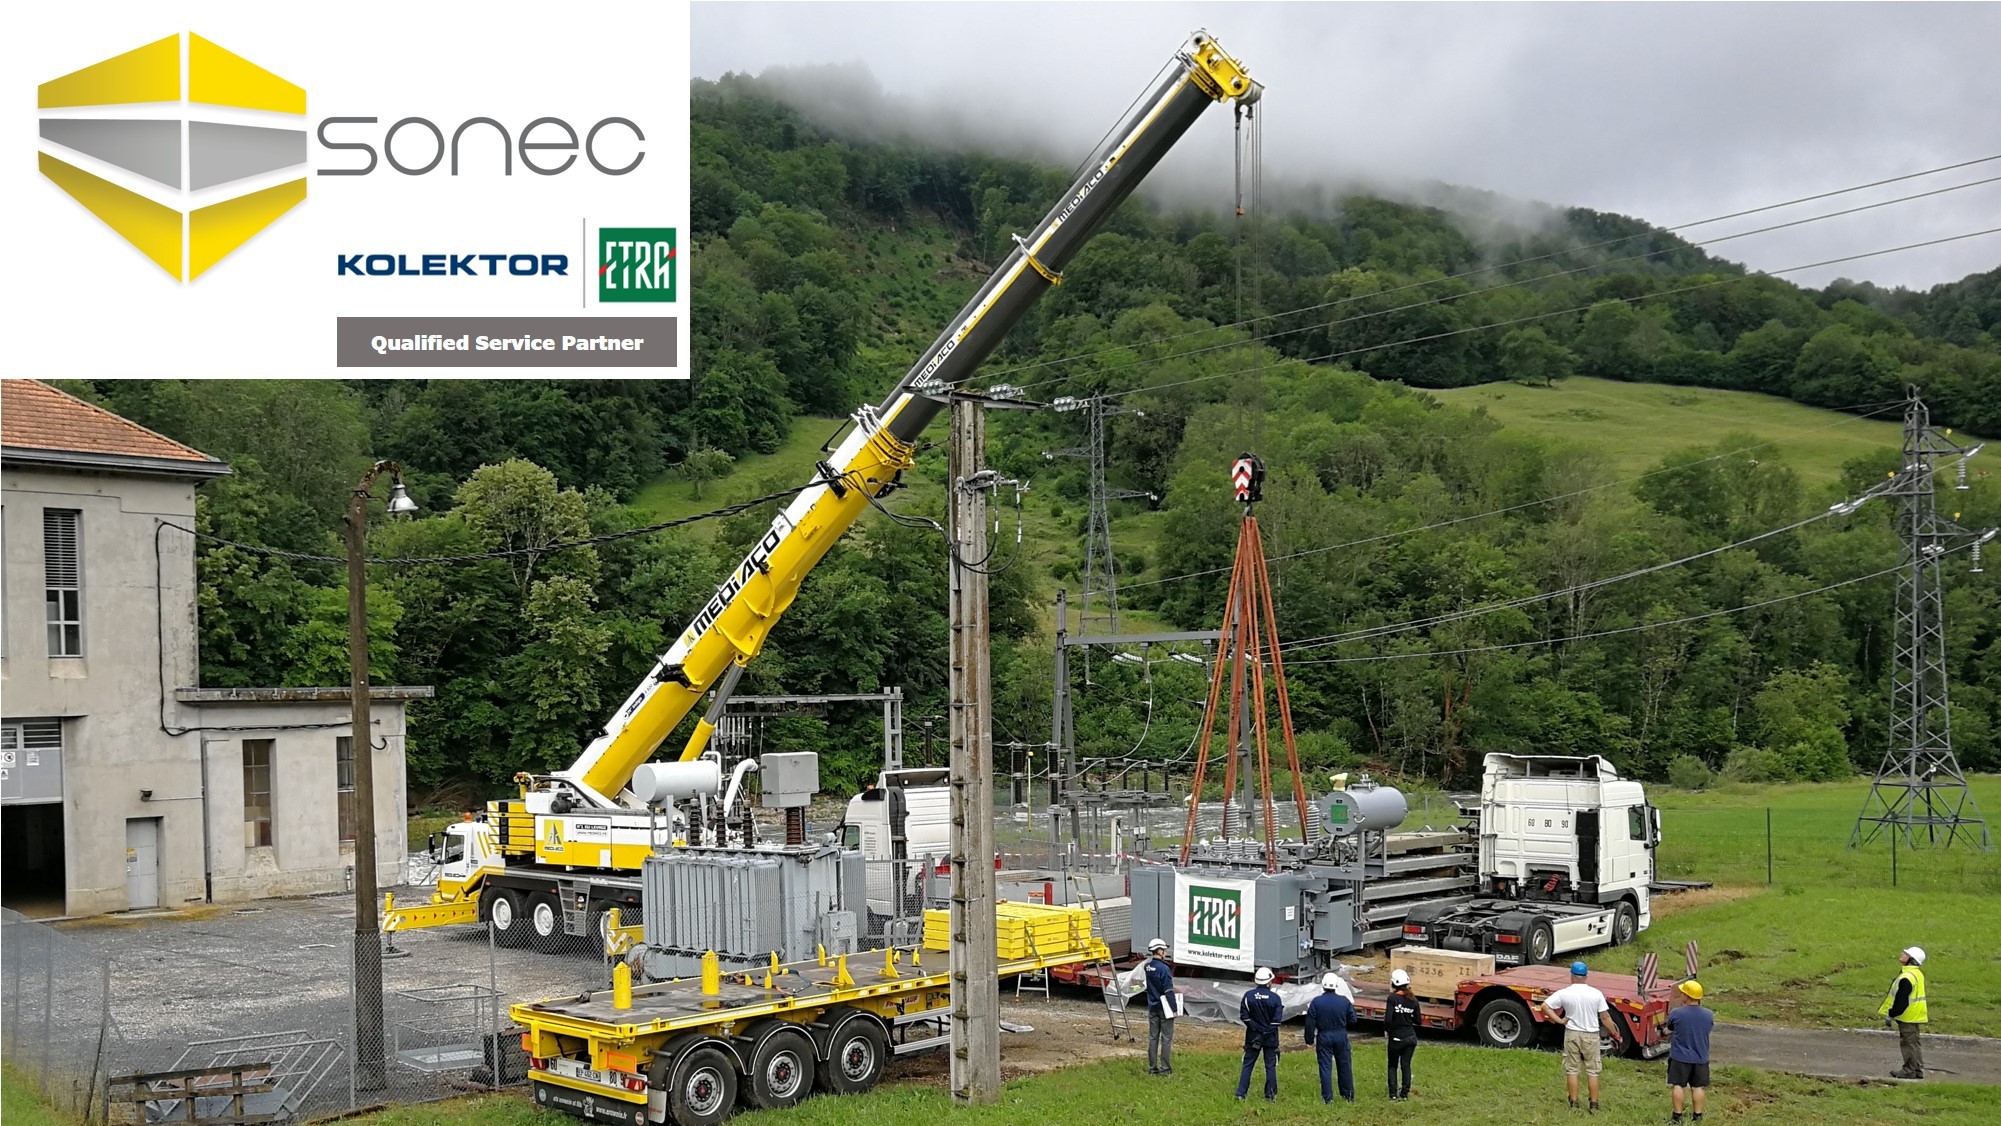 SONEC® es la primera empresa en Europa con la etiqueta KESA para la supervisión del montaje de transformadores eléctricos Kolektor ETRA.